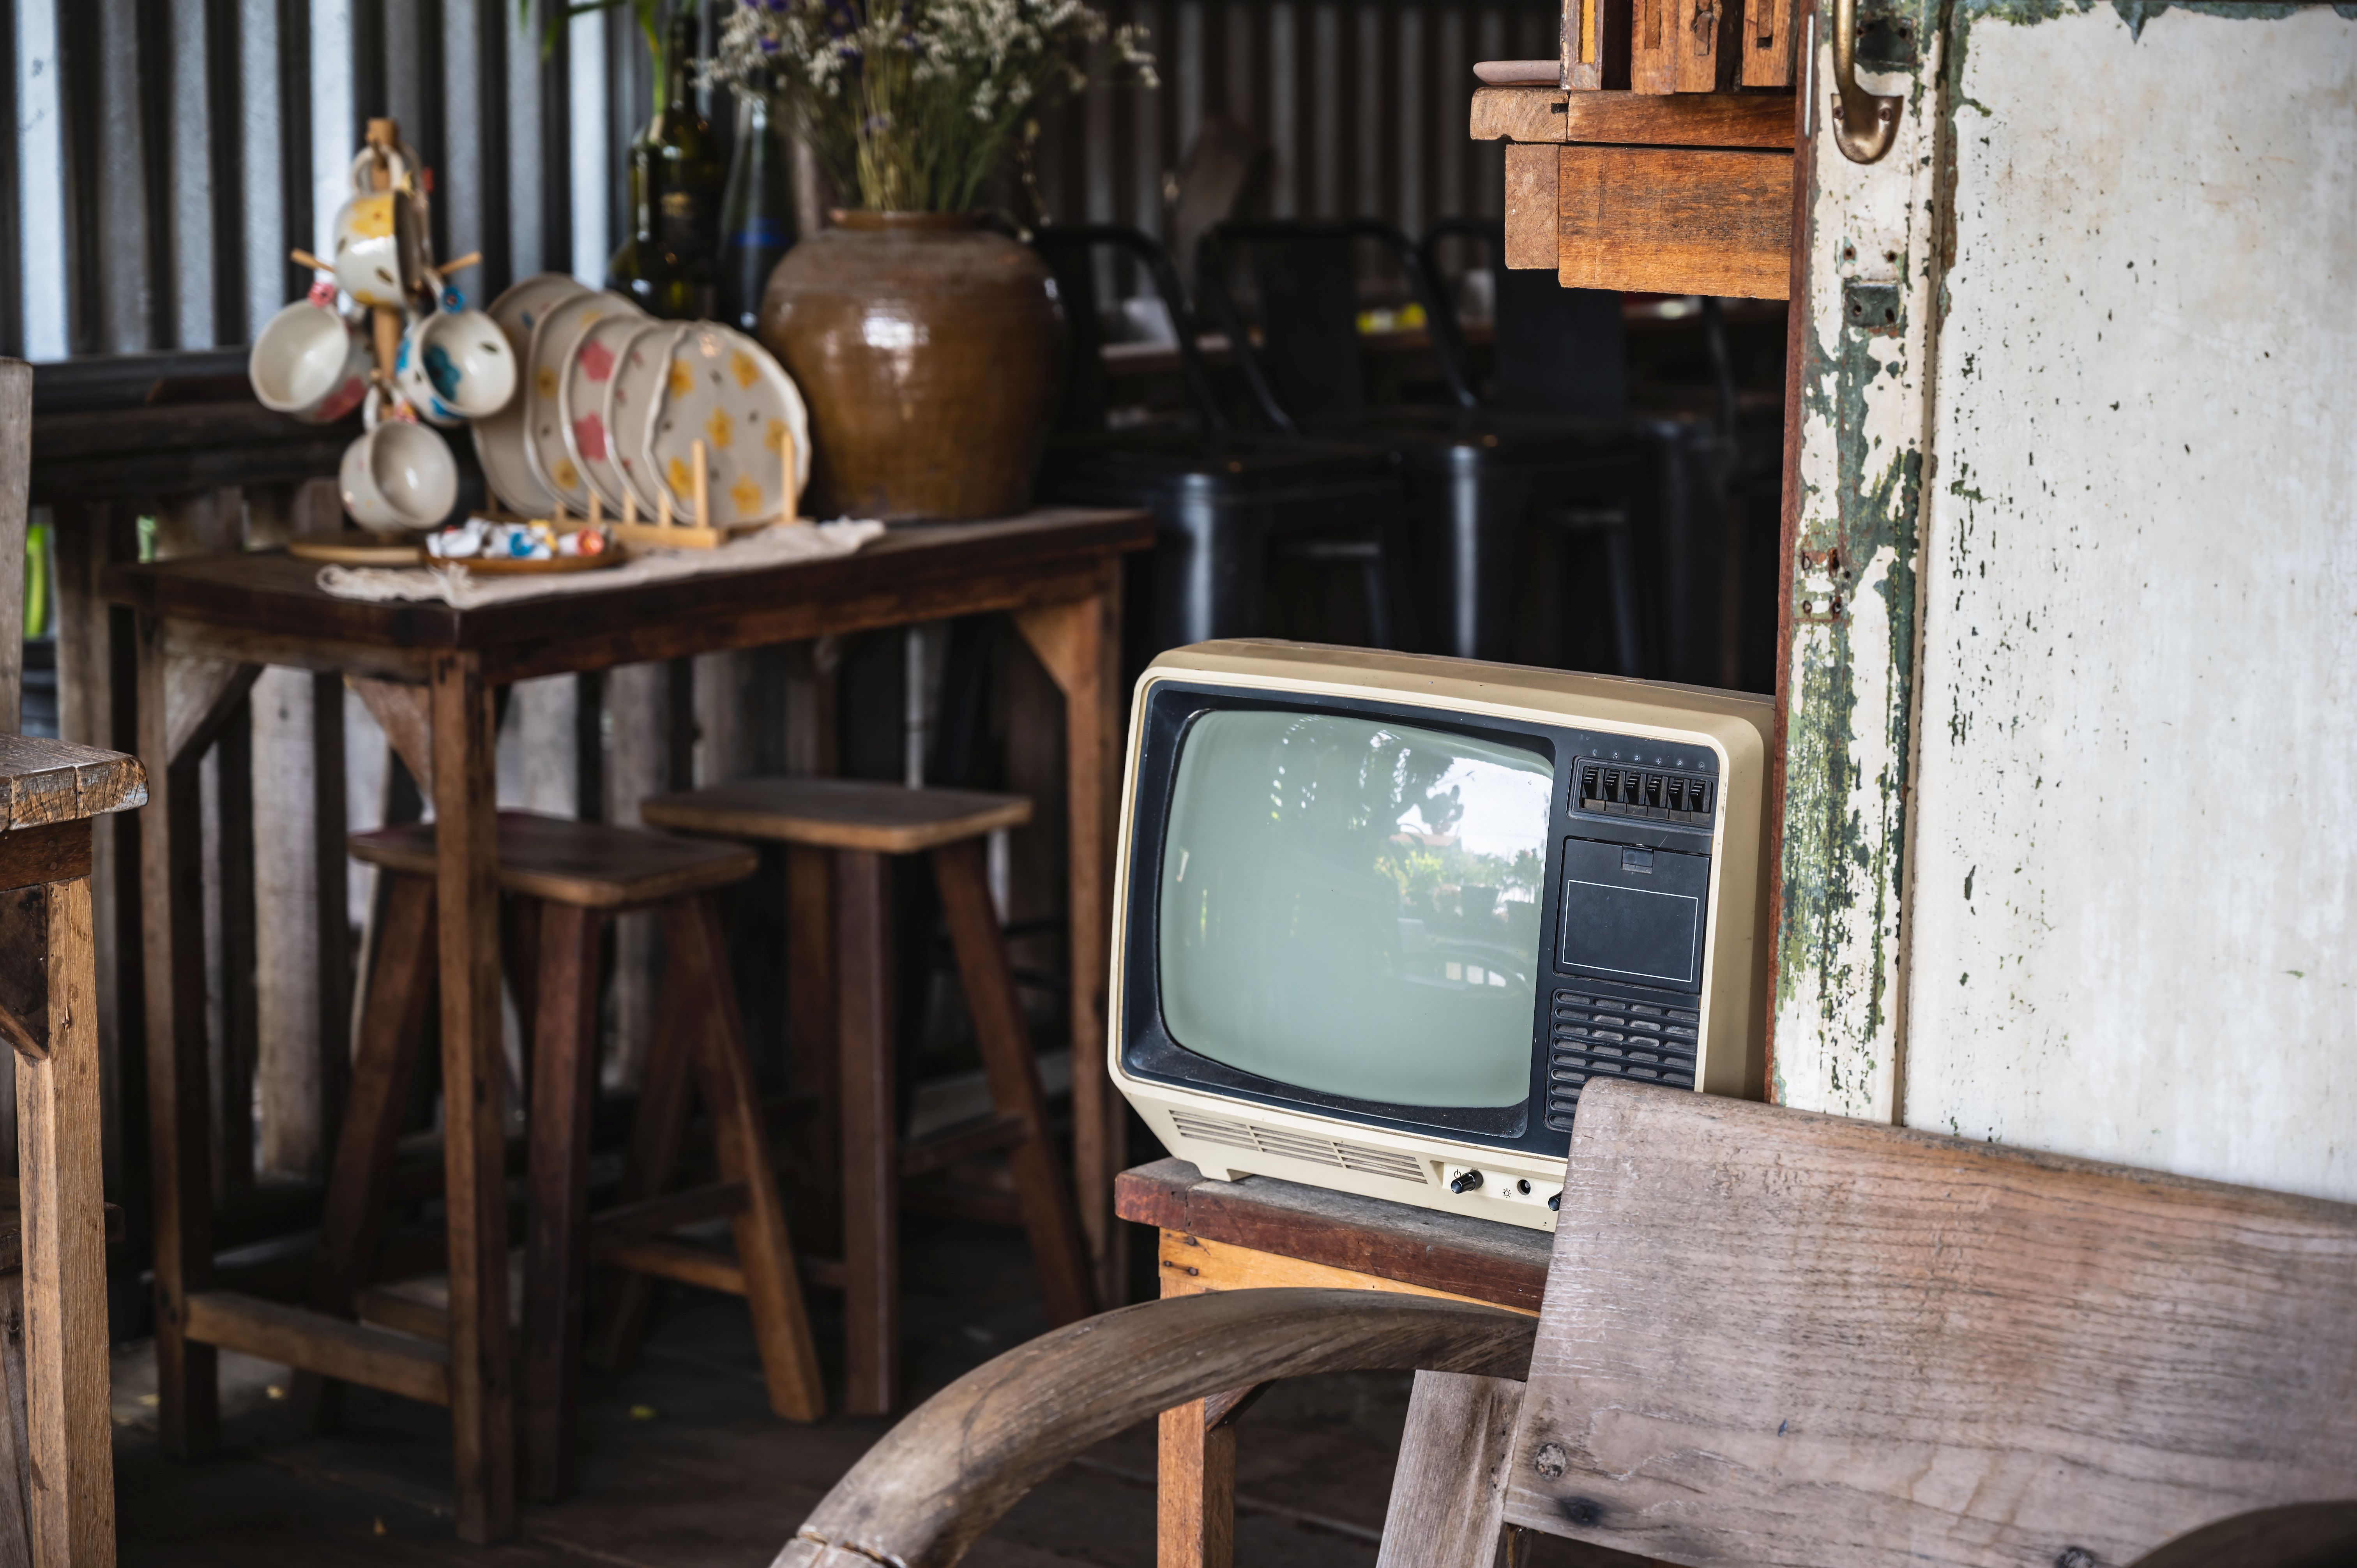 Vintage television in the vintage cafe